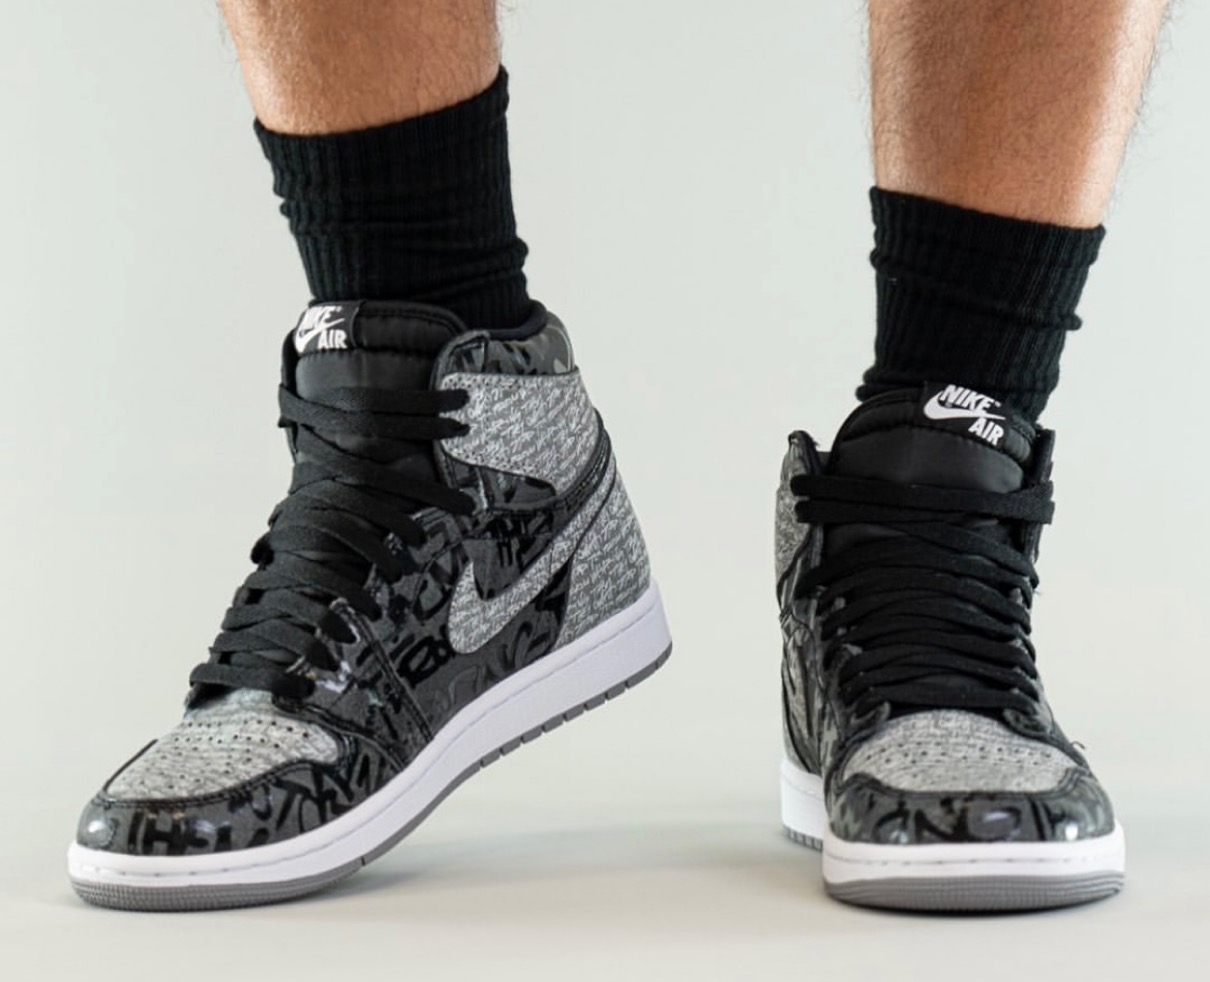 Nike】Air Jordan 1 Retro High OG “Rebellionaire”が国内3月12日に 